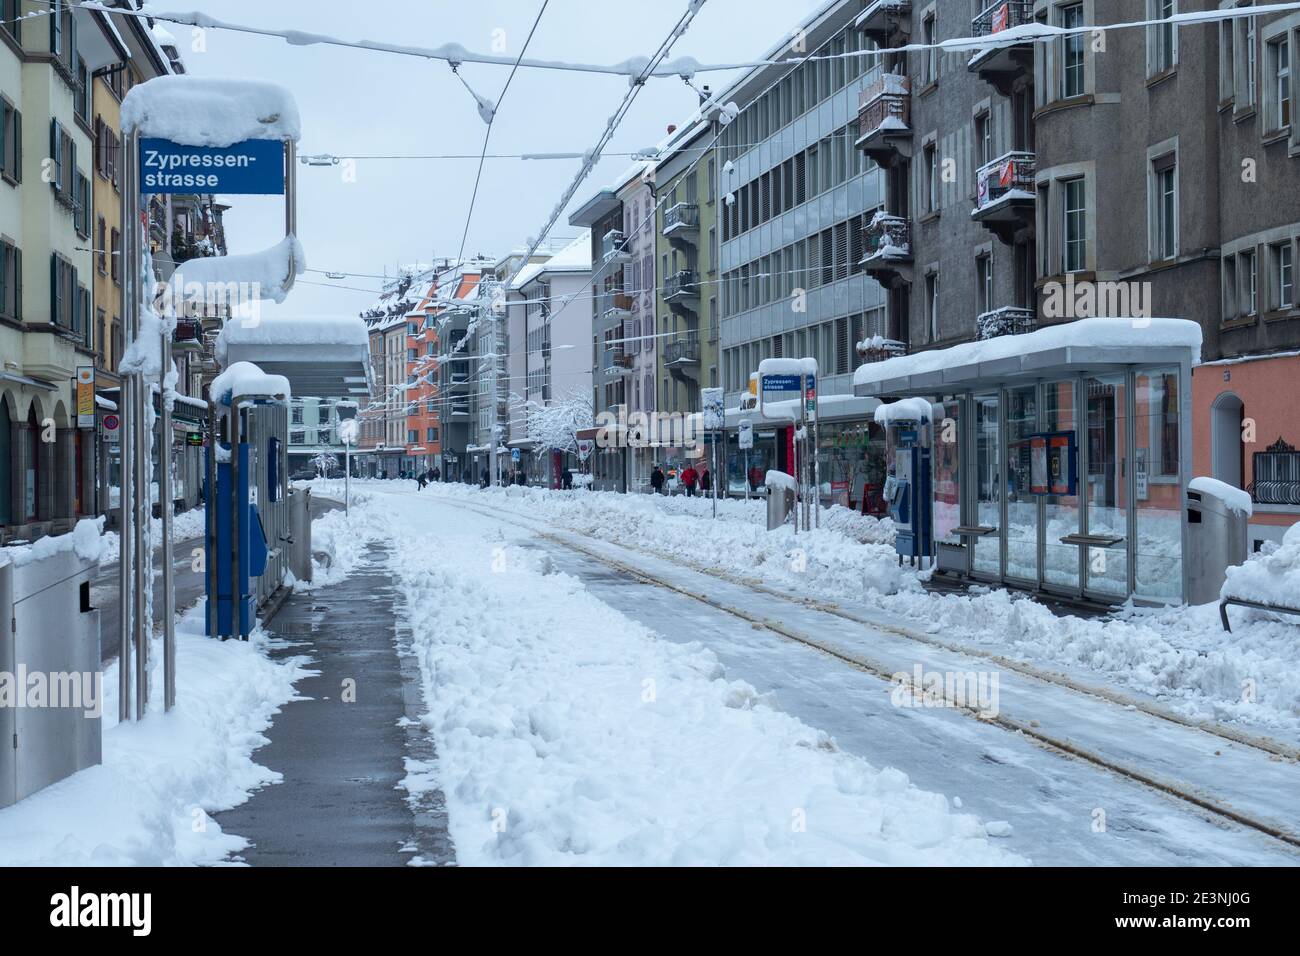 Zürich, Schweiz - 15. Januar 2021: Straßenbahnhaltestelle wegen Schnee außer Betrieb Stockfoto